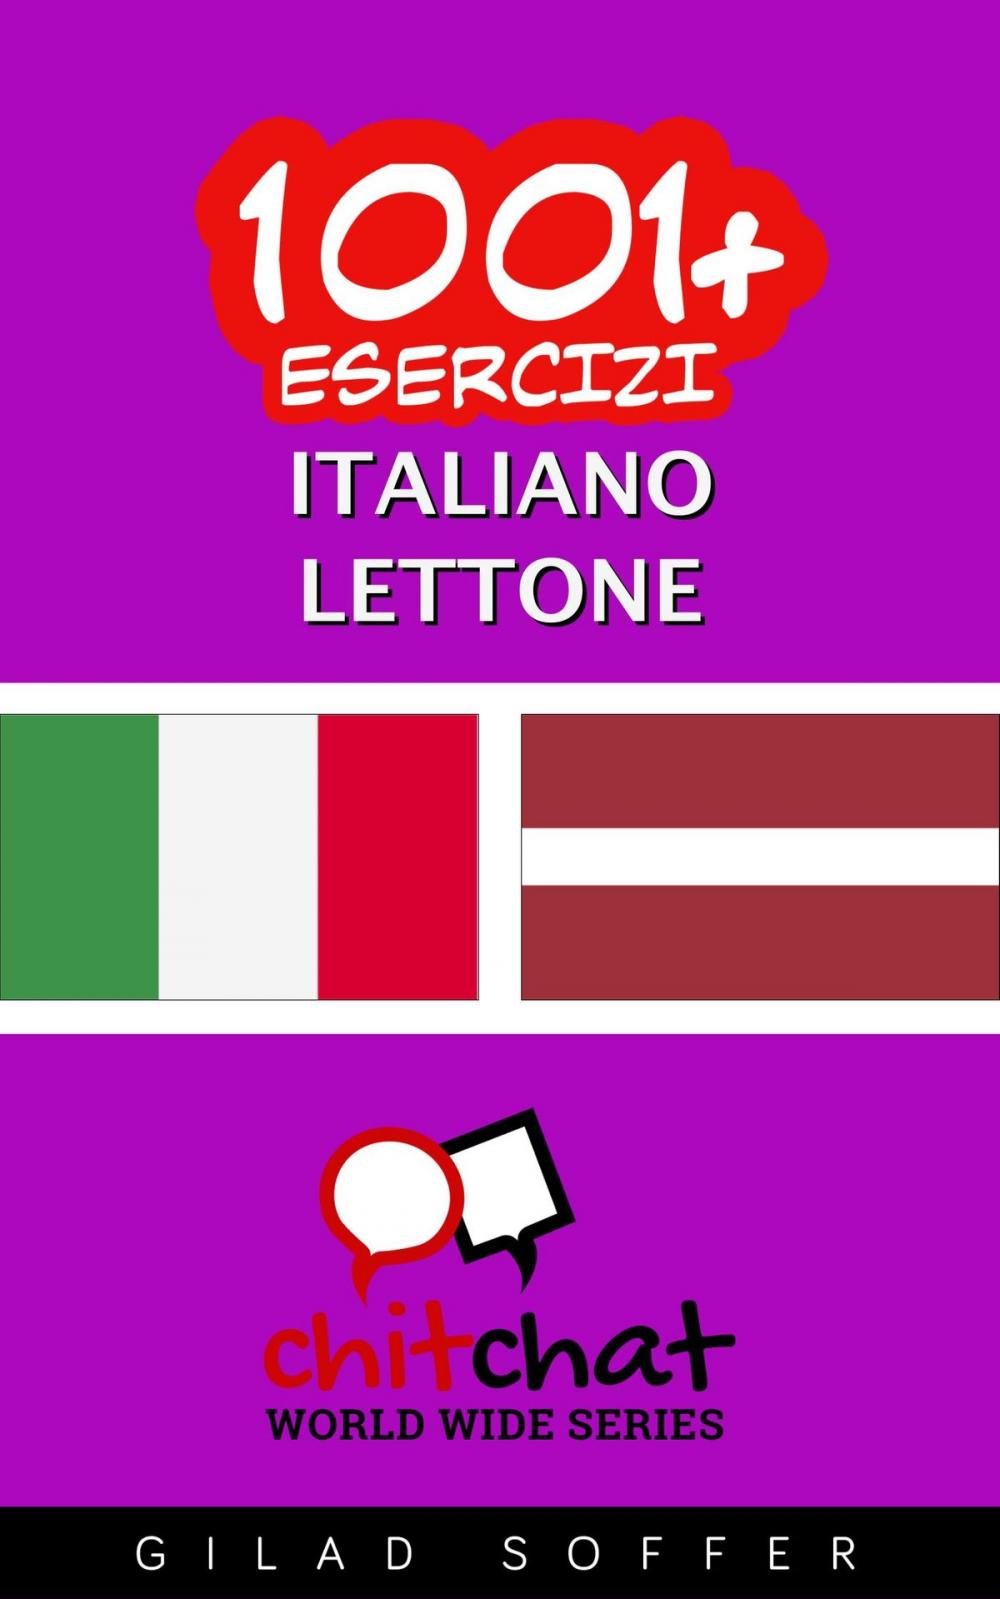 Big bigCover of 1001+ Esercizi Italiano - Lettone